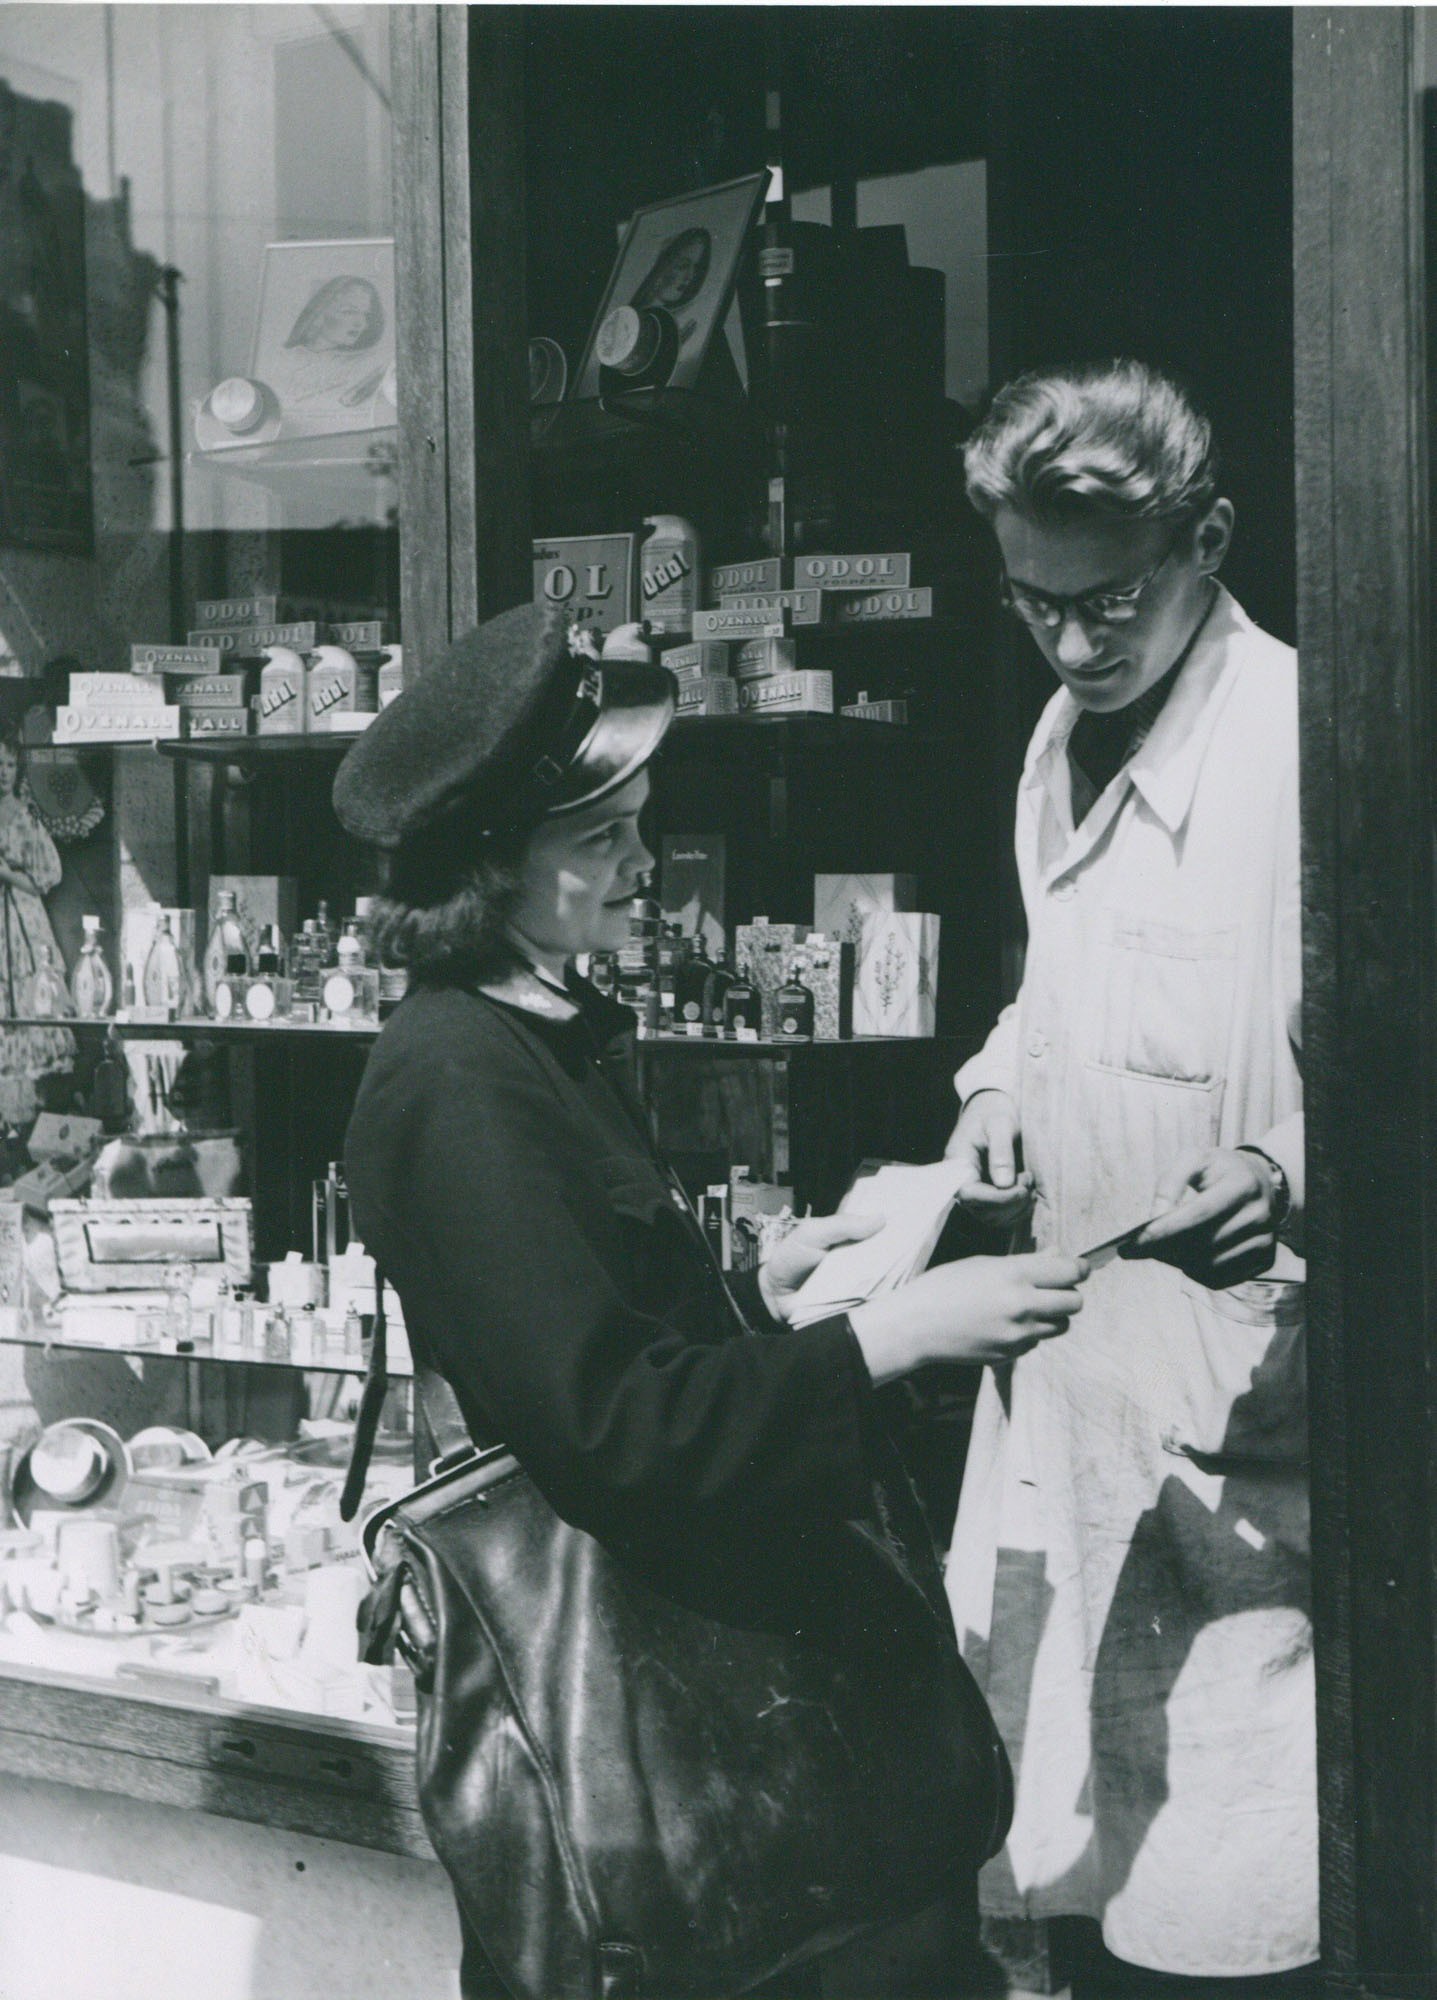 Postai kézbesítők munkában (Postamúzeum CC BY-NC-SA)